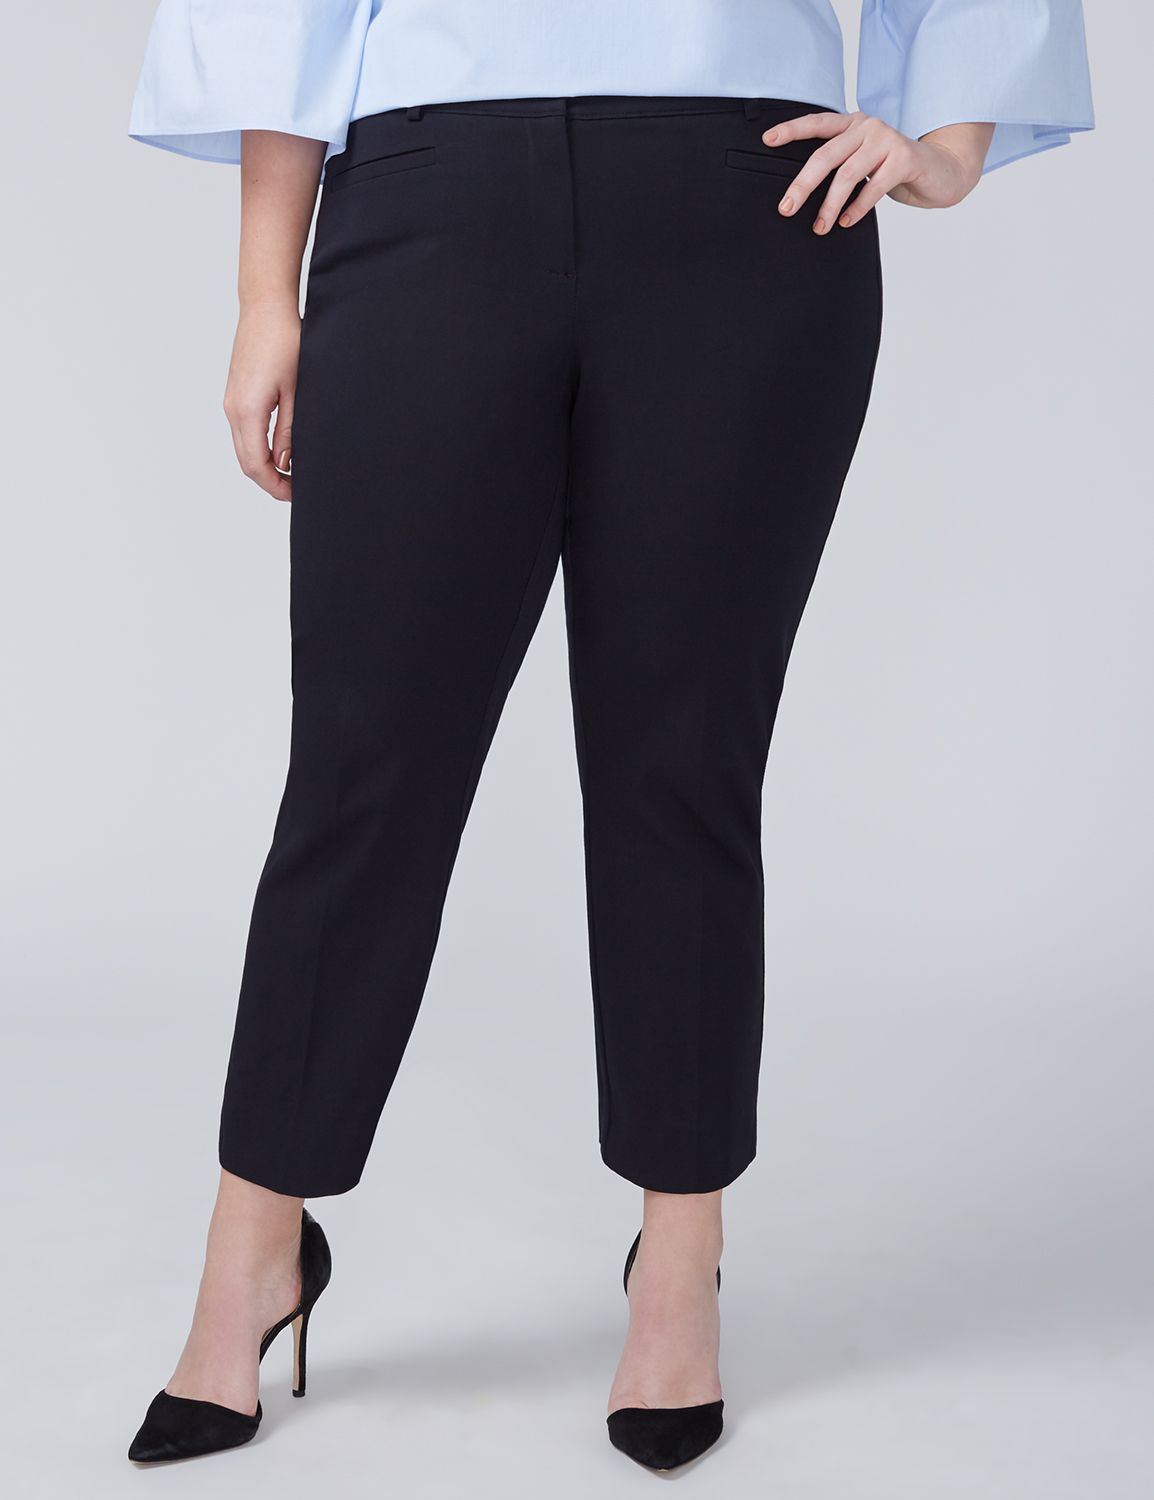 New & Trendy Plus Size Women's Pants | Lane Bryant